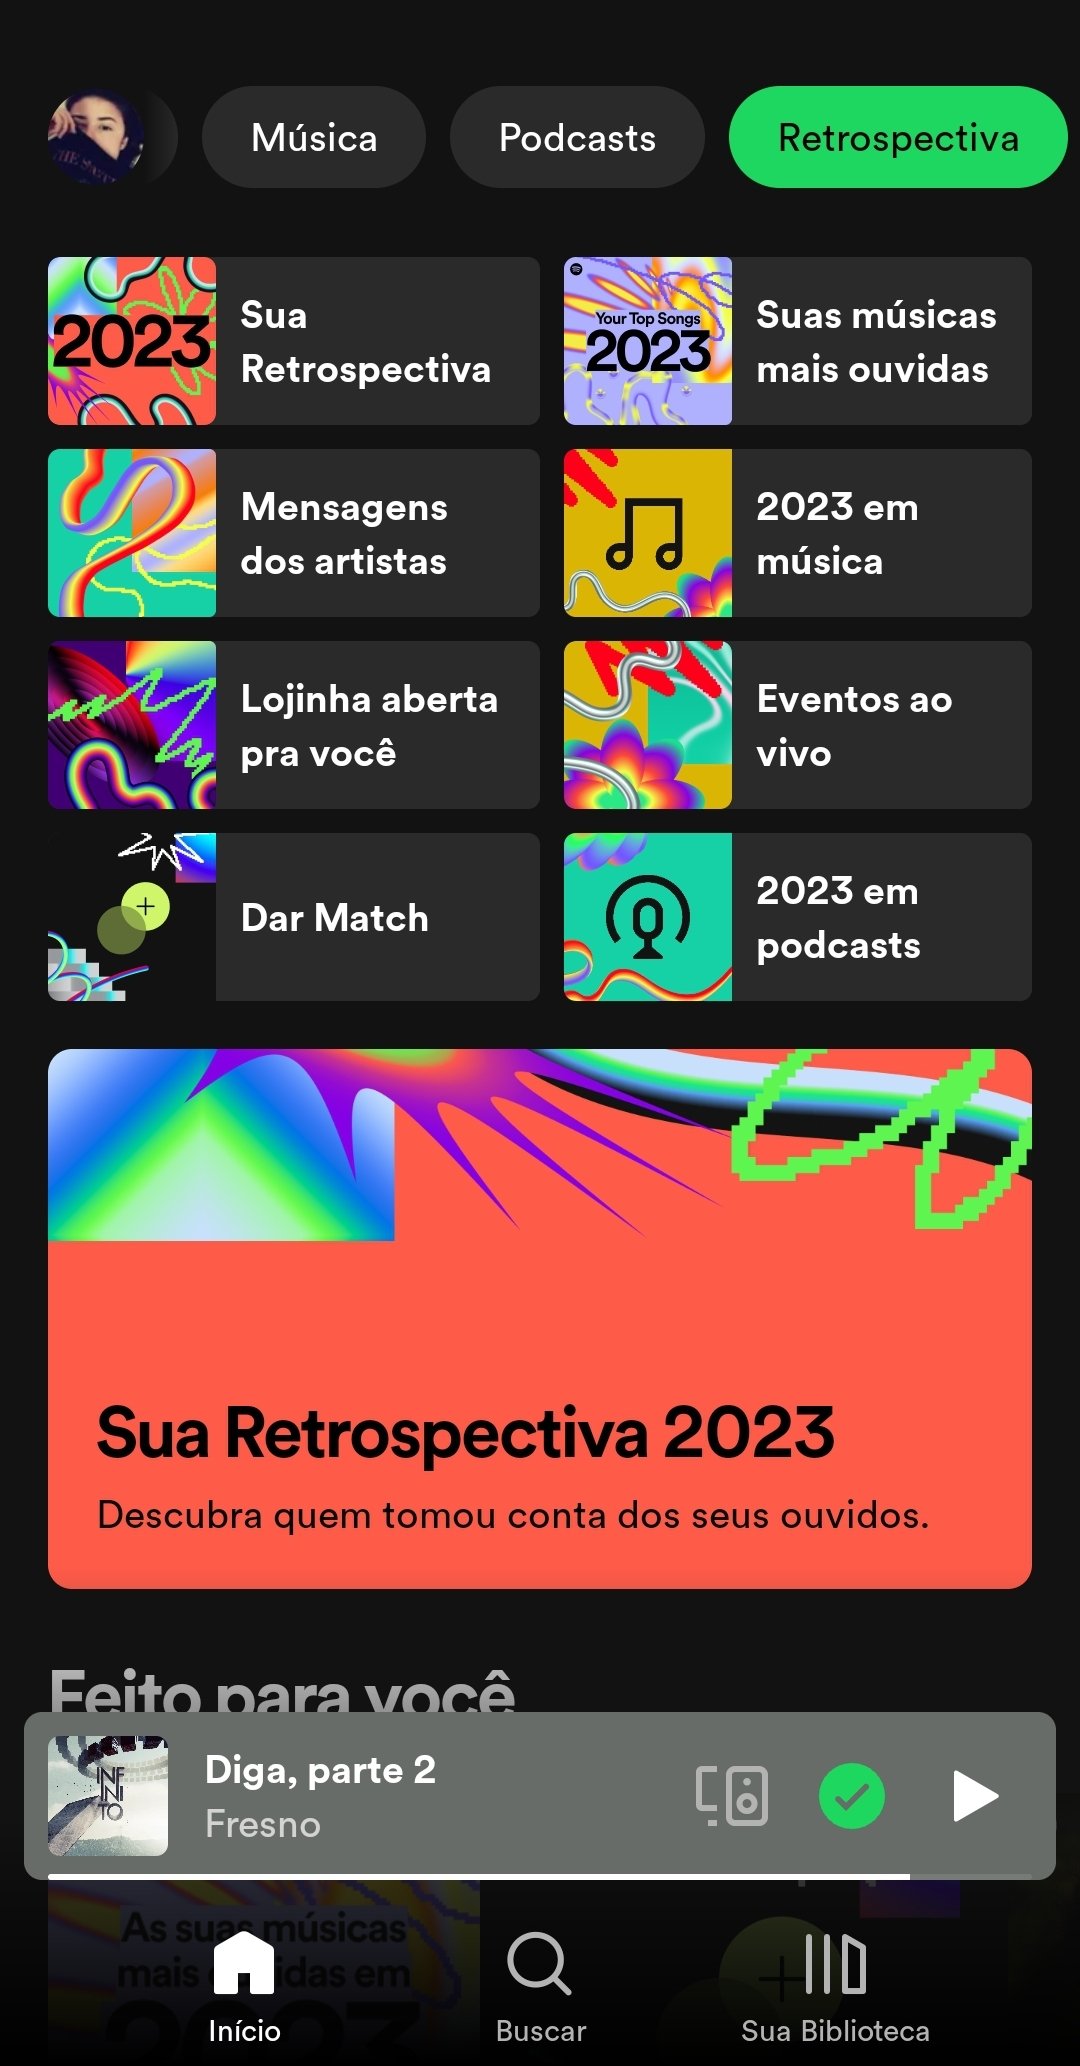 Retrospectiva Spotify Wrapped 2023 está disponível no app e no PC